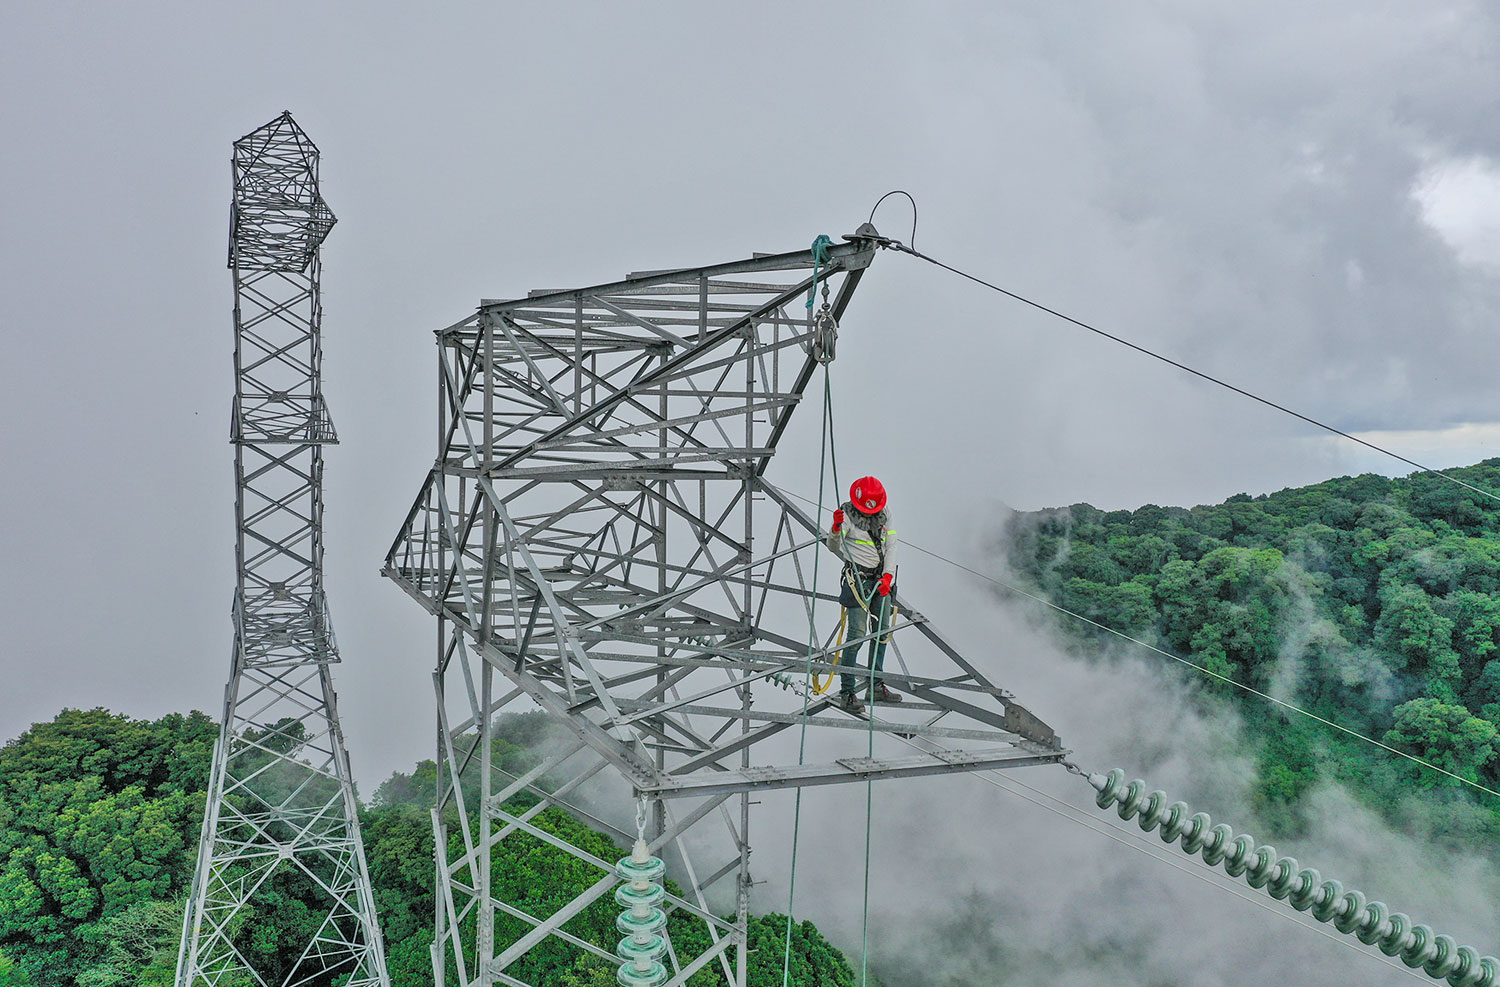 Contratista de Trecsa realizando trabajos a 80 metros de altura. (Foto: Trecsa)